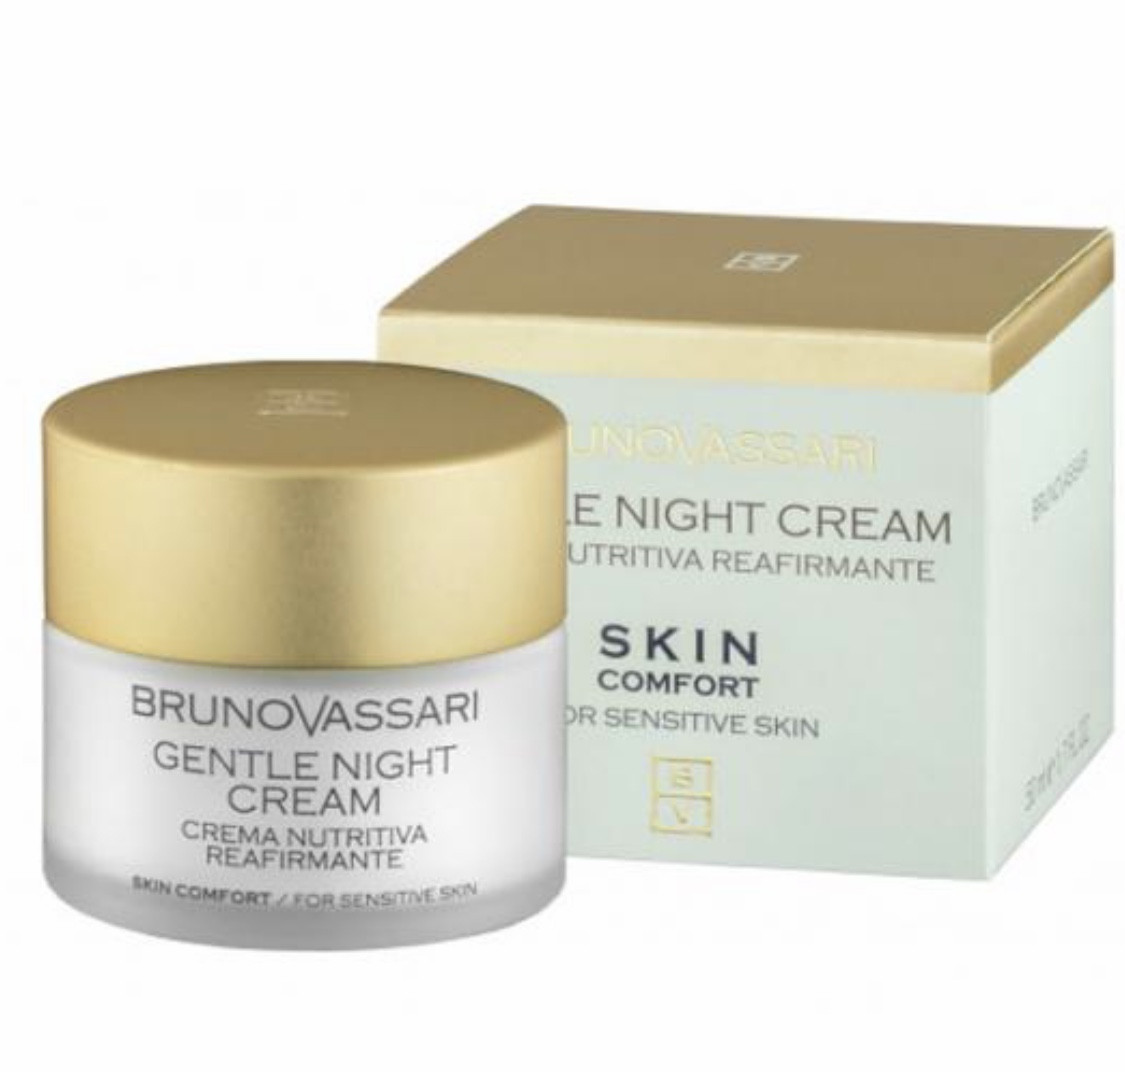 Bruno Vassari night cream